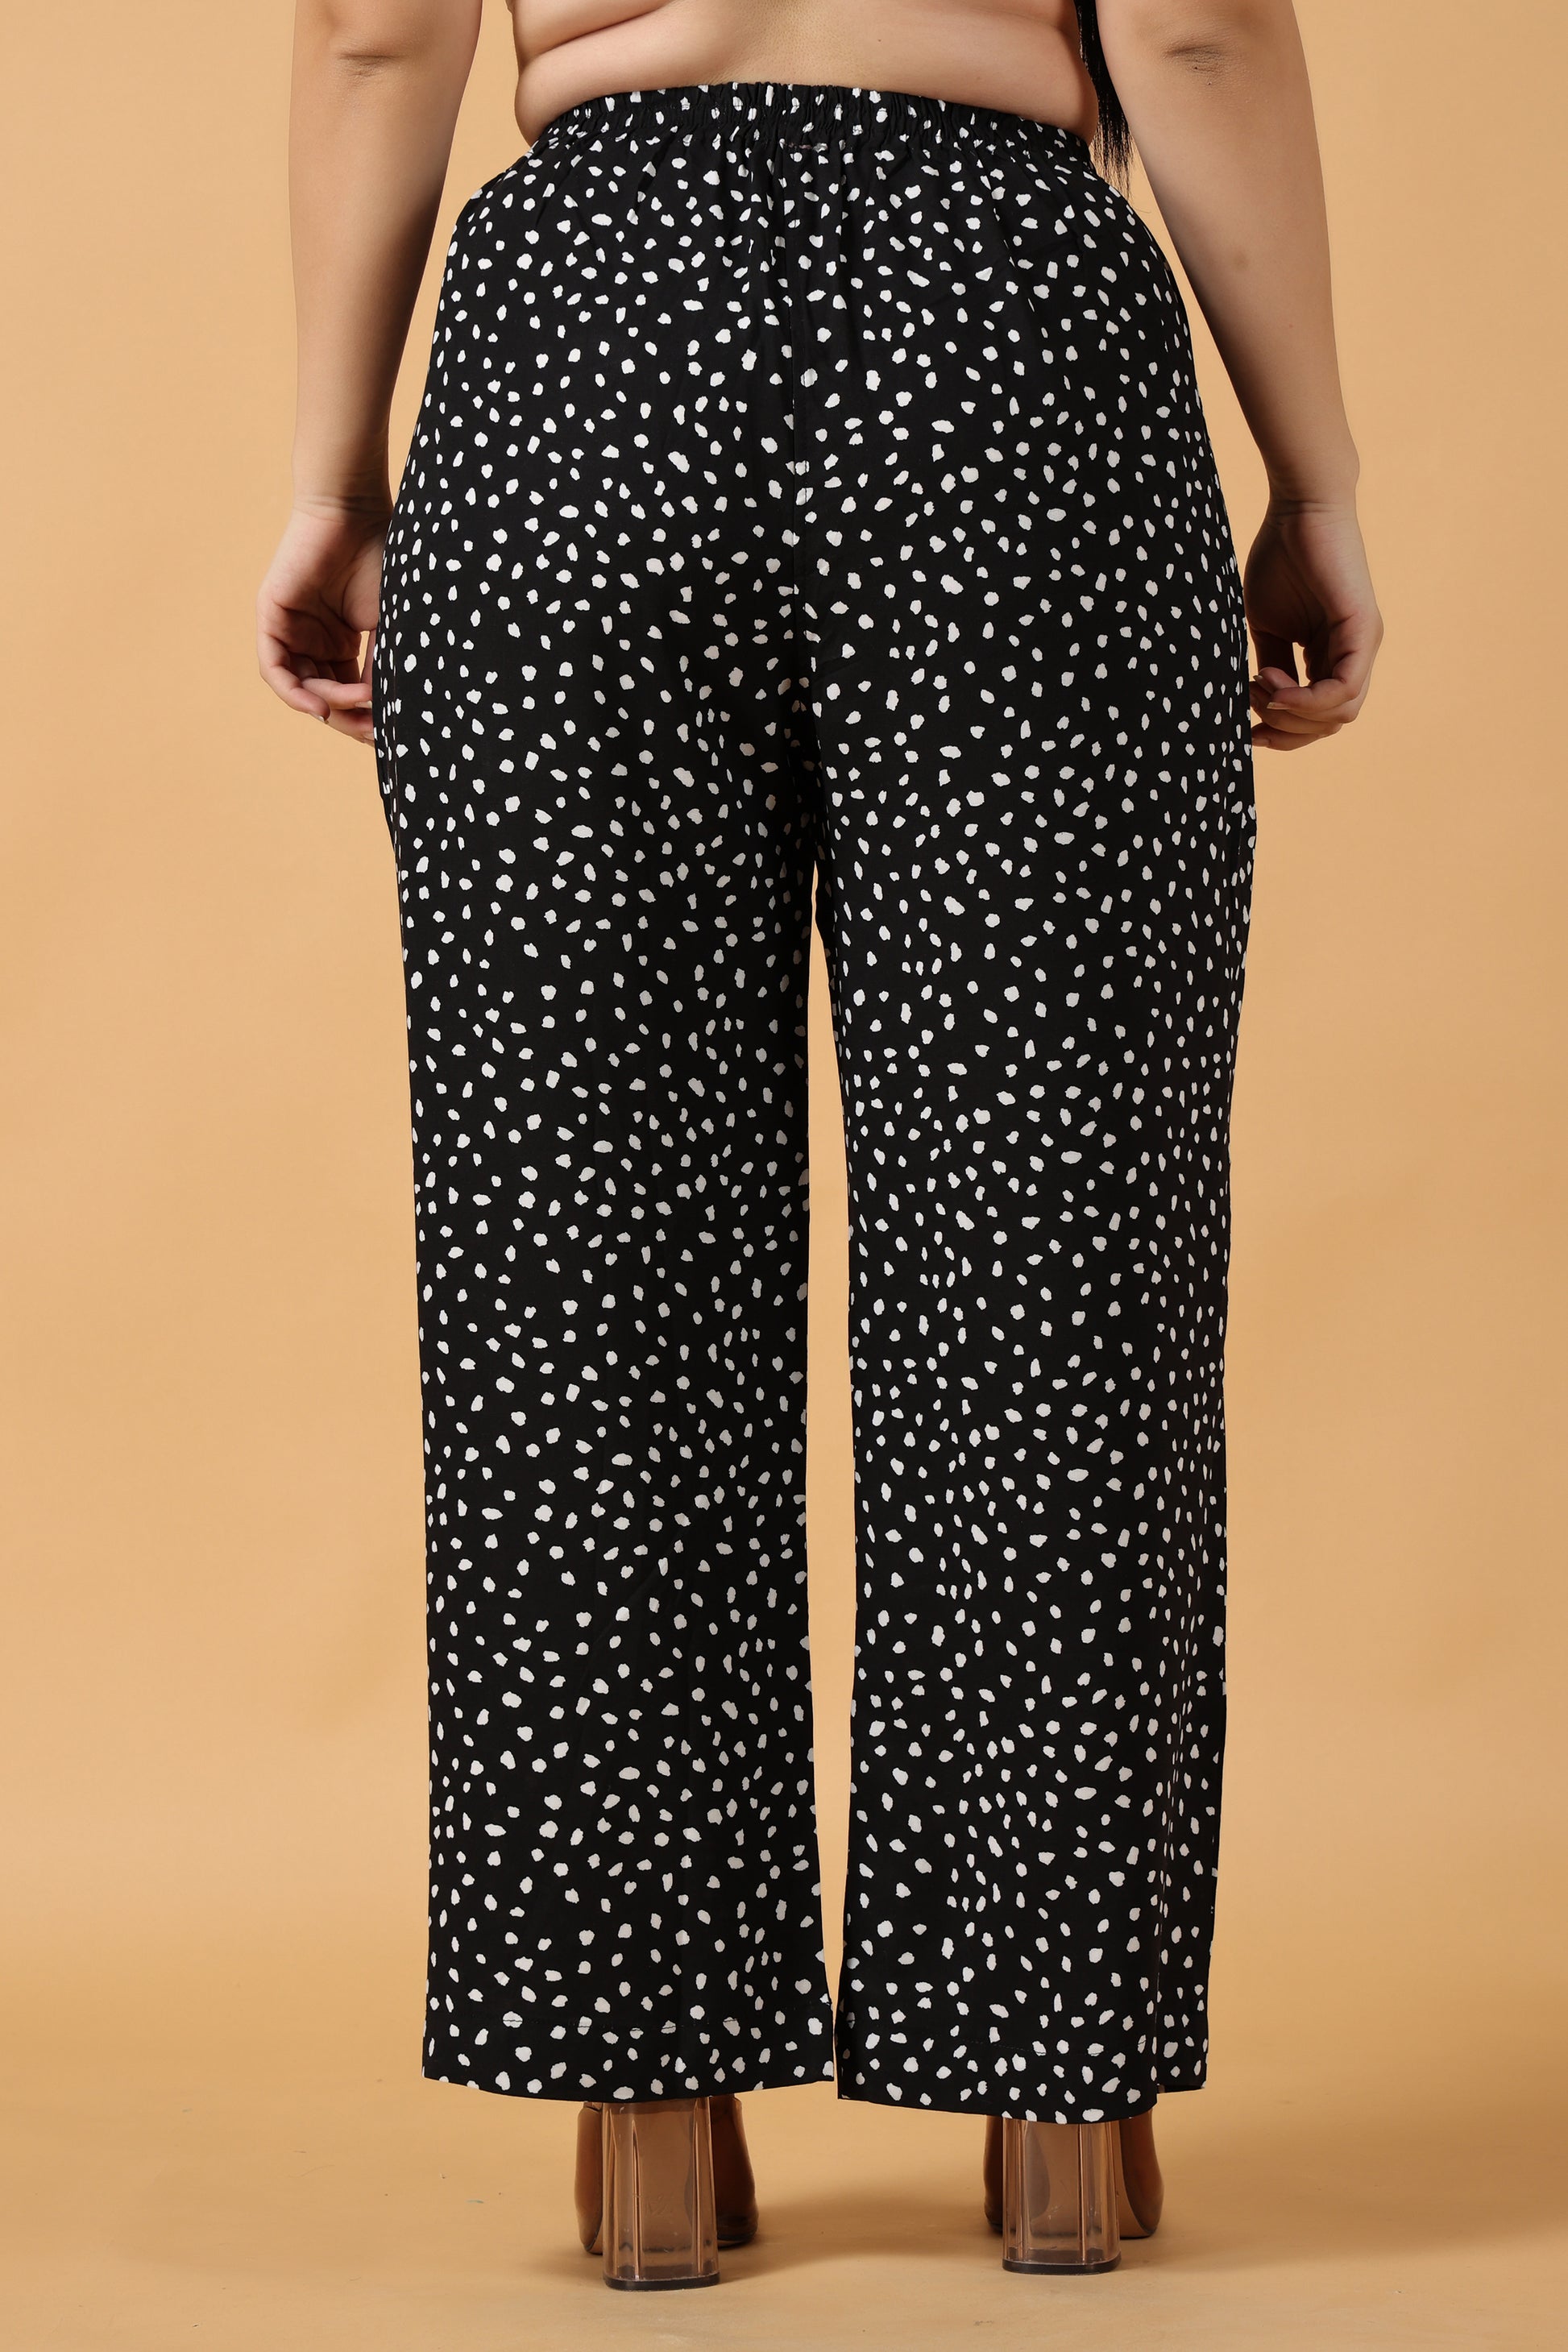 Women Plus Size Black Printed Rayon palazzo pants | Apella